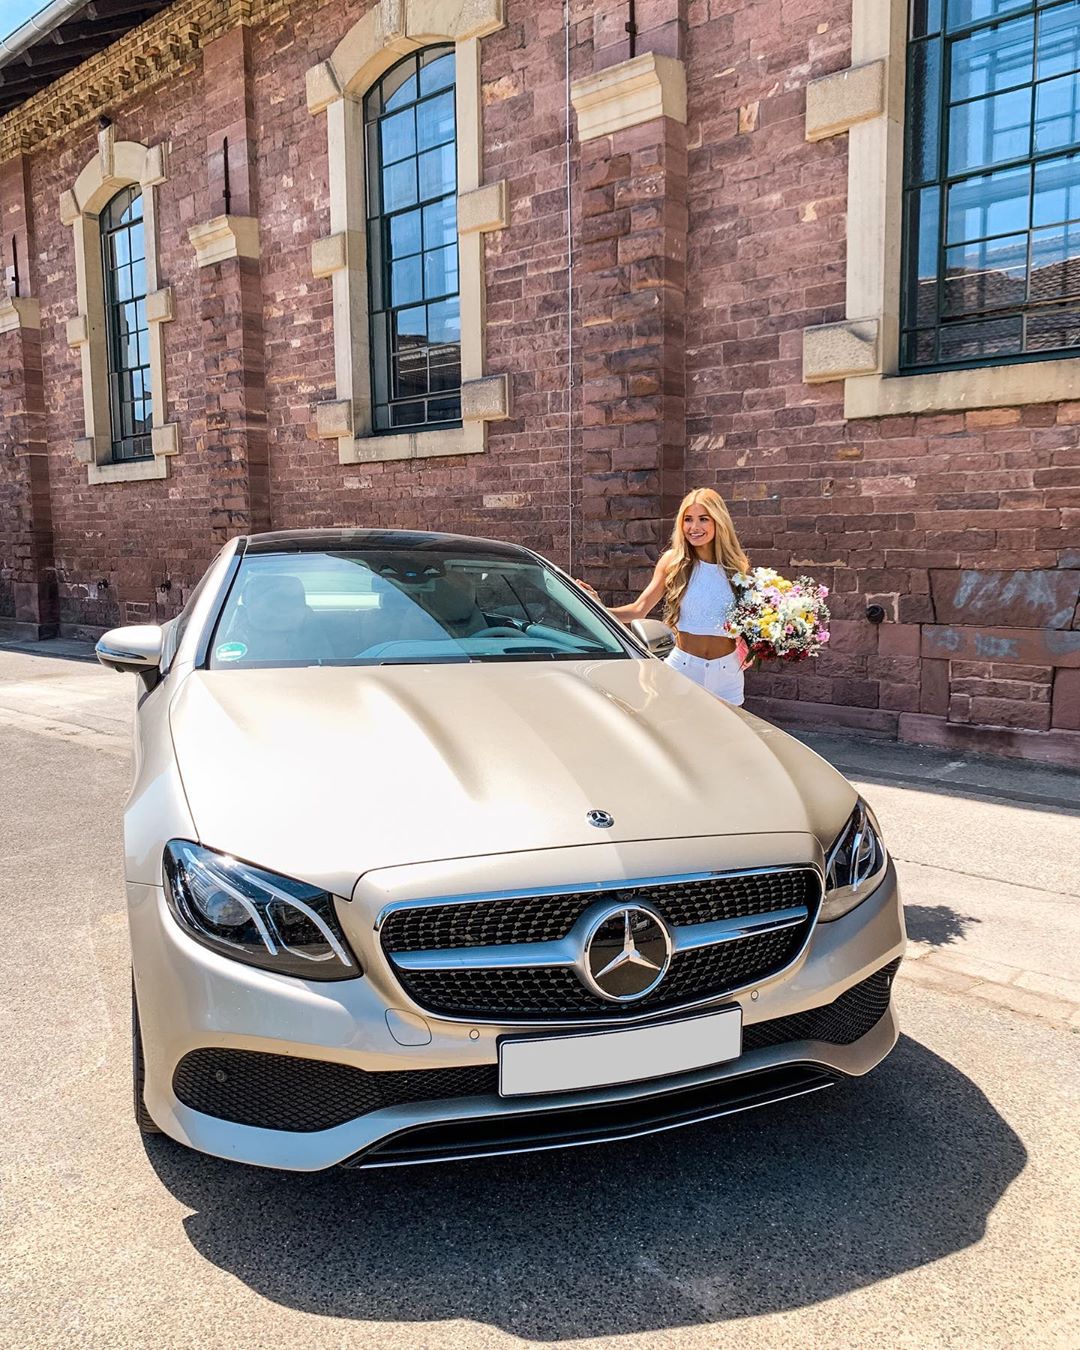 Sunny greetings from the dynamic duo @pamela_rf and her Mercedes-Benz E-Class Coupé.  #MercedesBenz #EClass #PamelaReif #EClassCoupe #Sunshine #Car #Carsofinstagram #instacar  via @mb_stuttgart